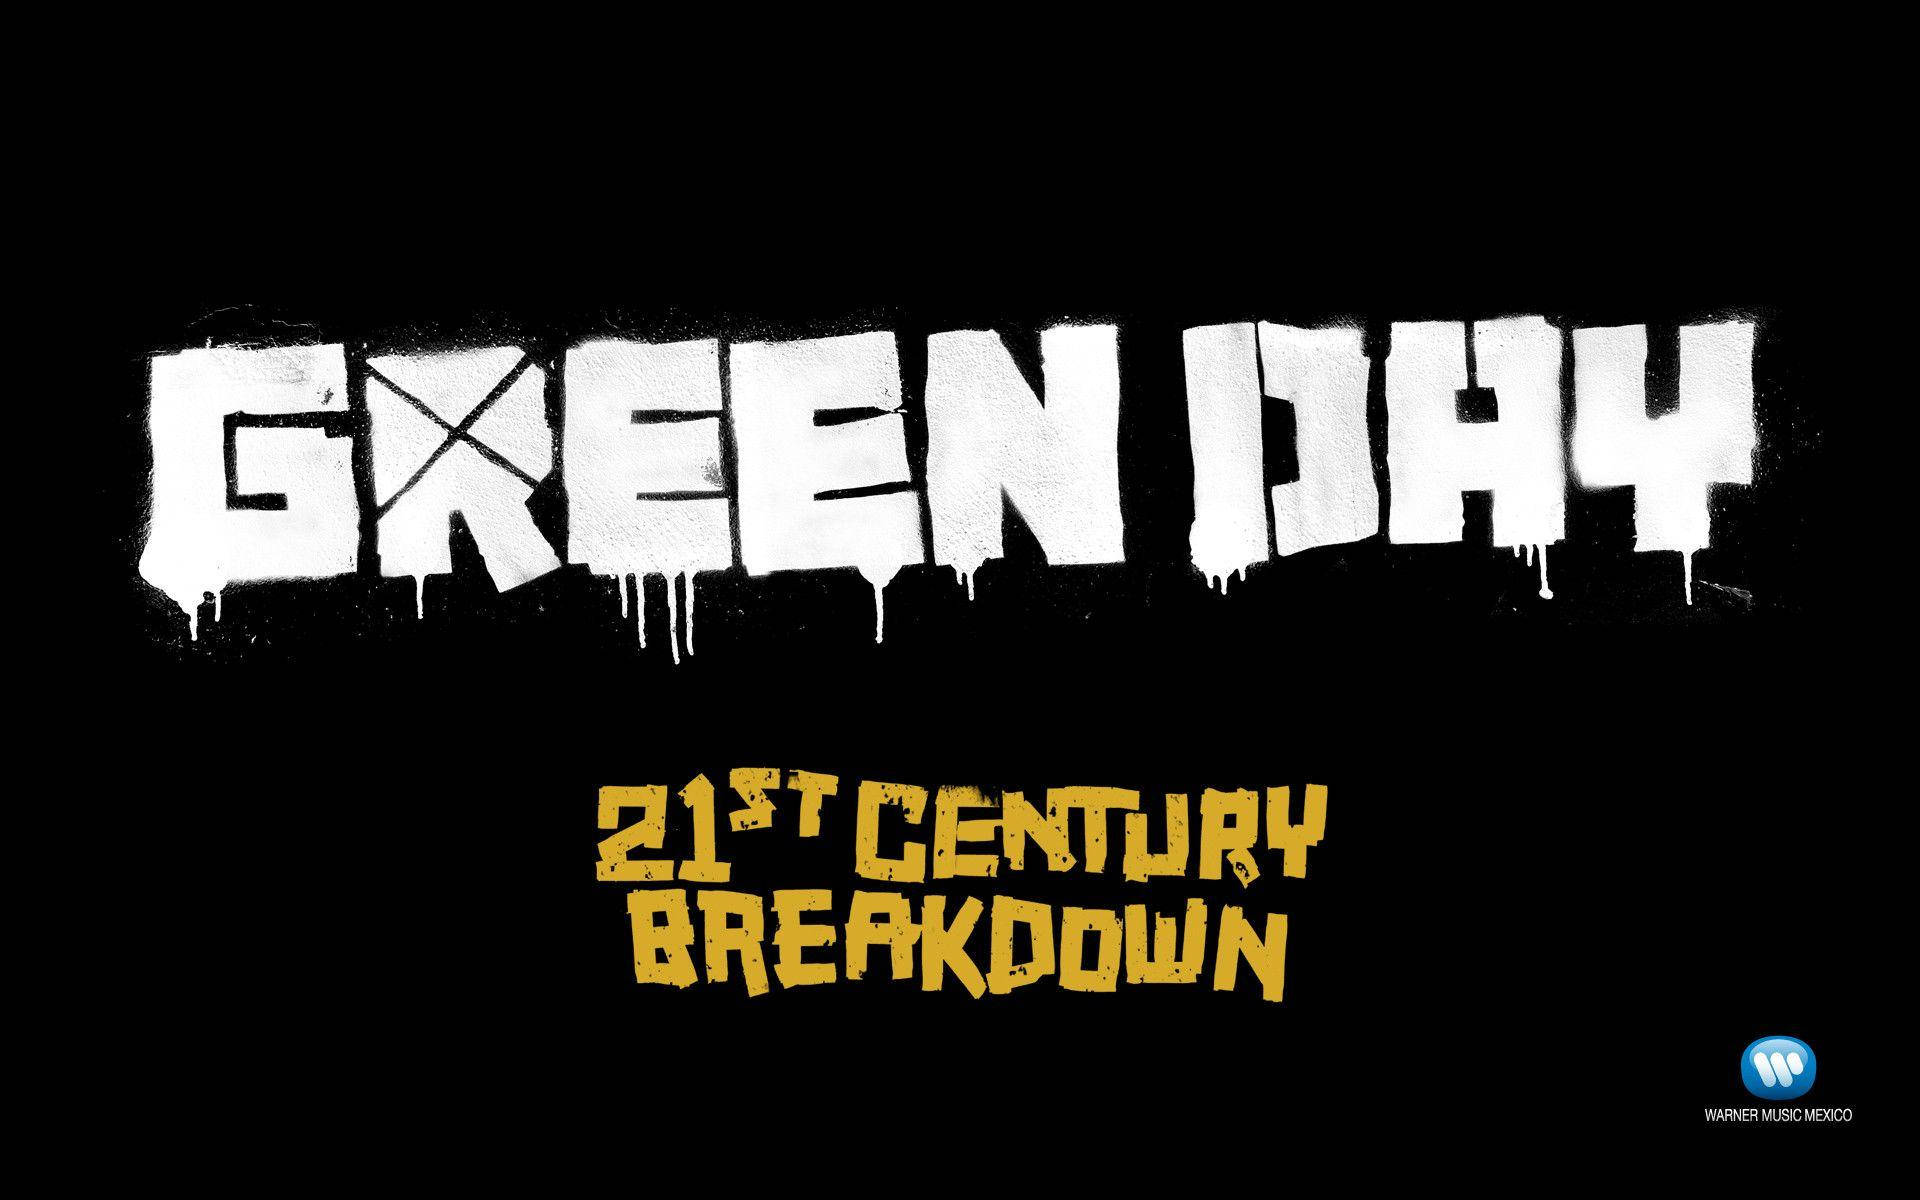 Green Day 21st Century Breakdown Album Background